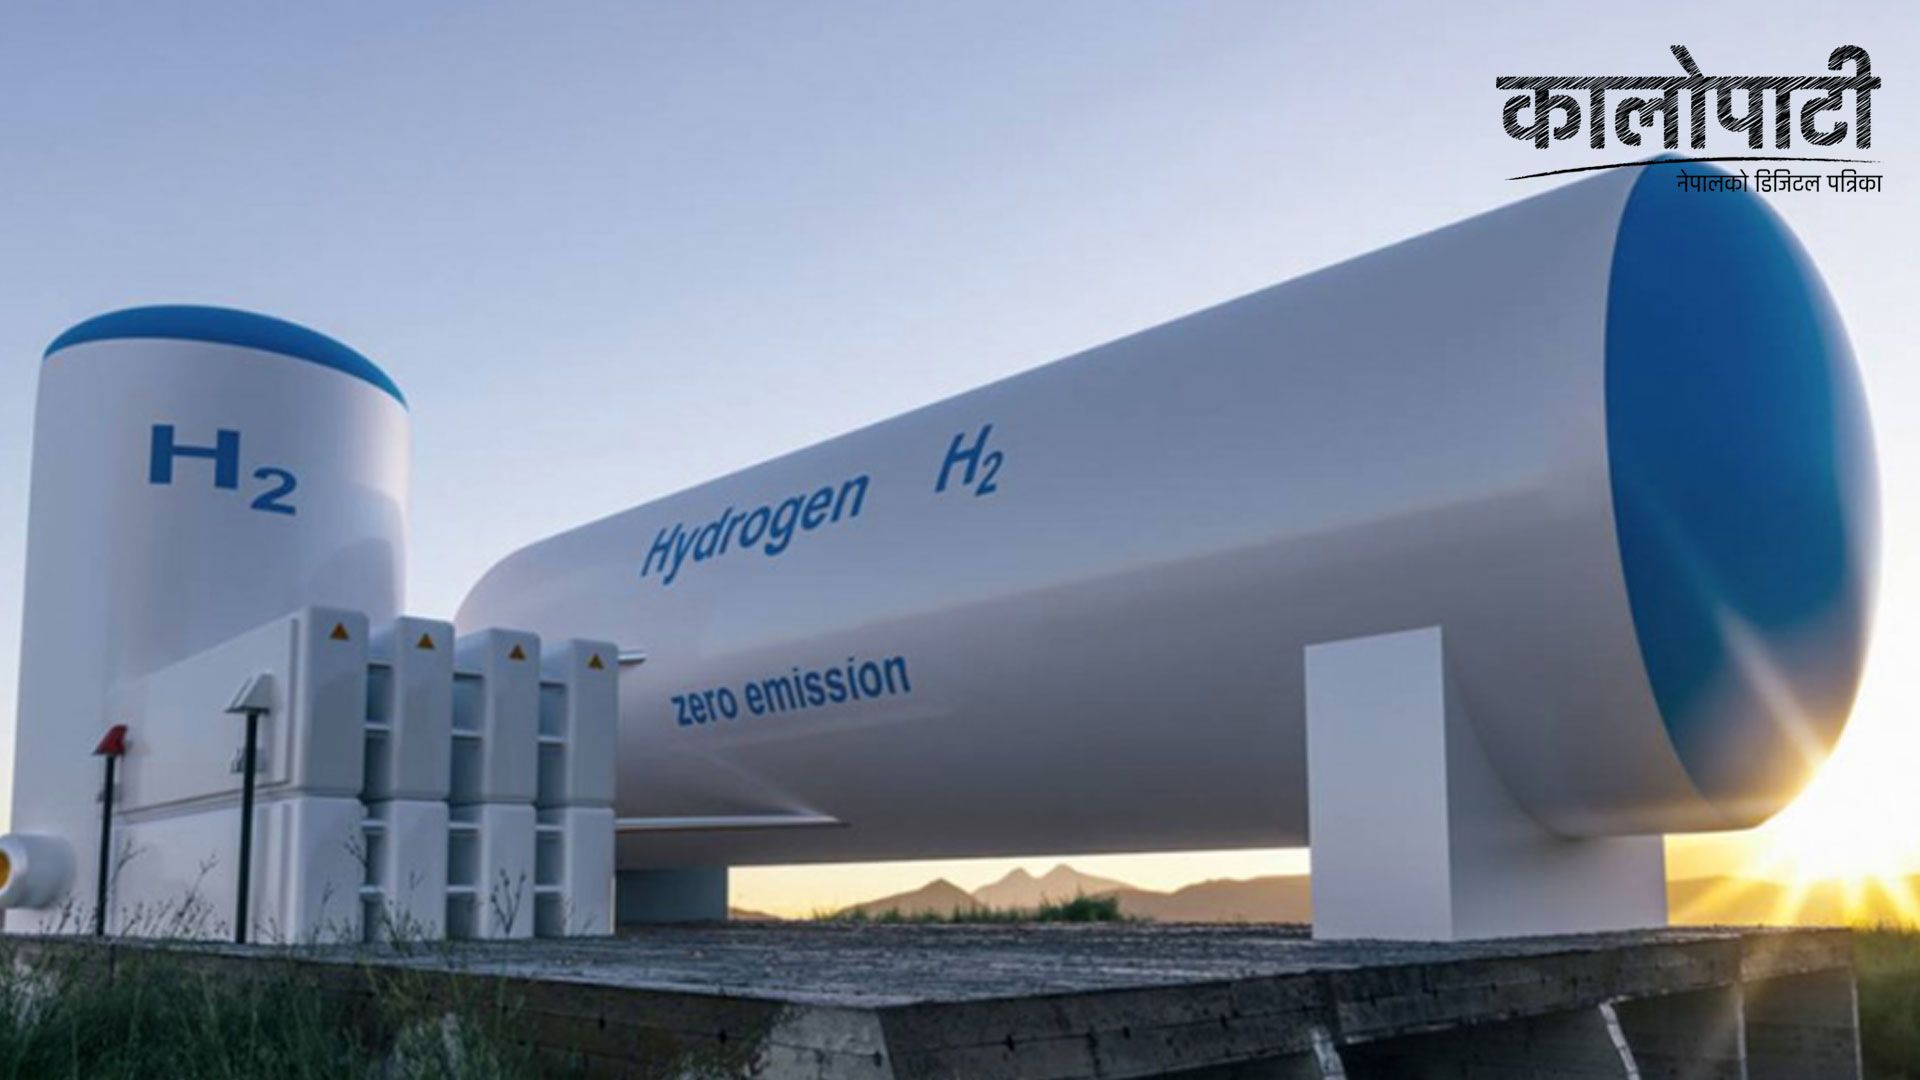 १०० मेगावाट क्षमताको हाइड्रोजन प्लान्ट स्थापनाका लागि अध्ययन गर्न सरकारको आग्रह